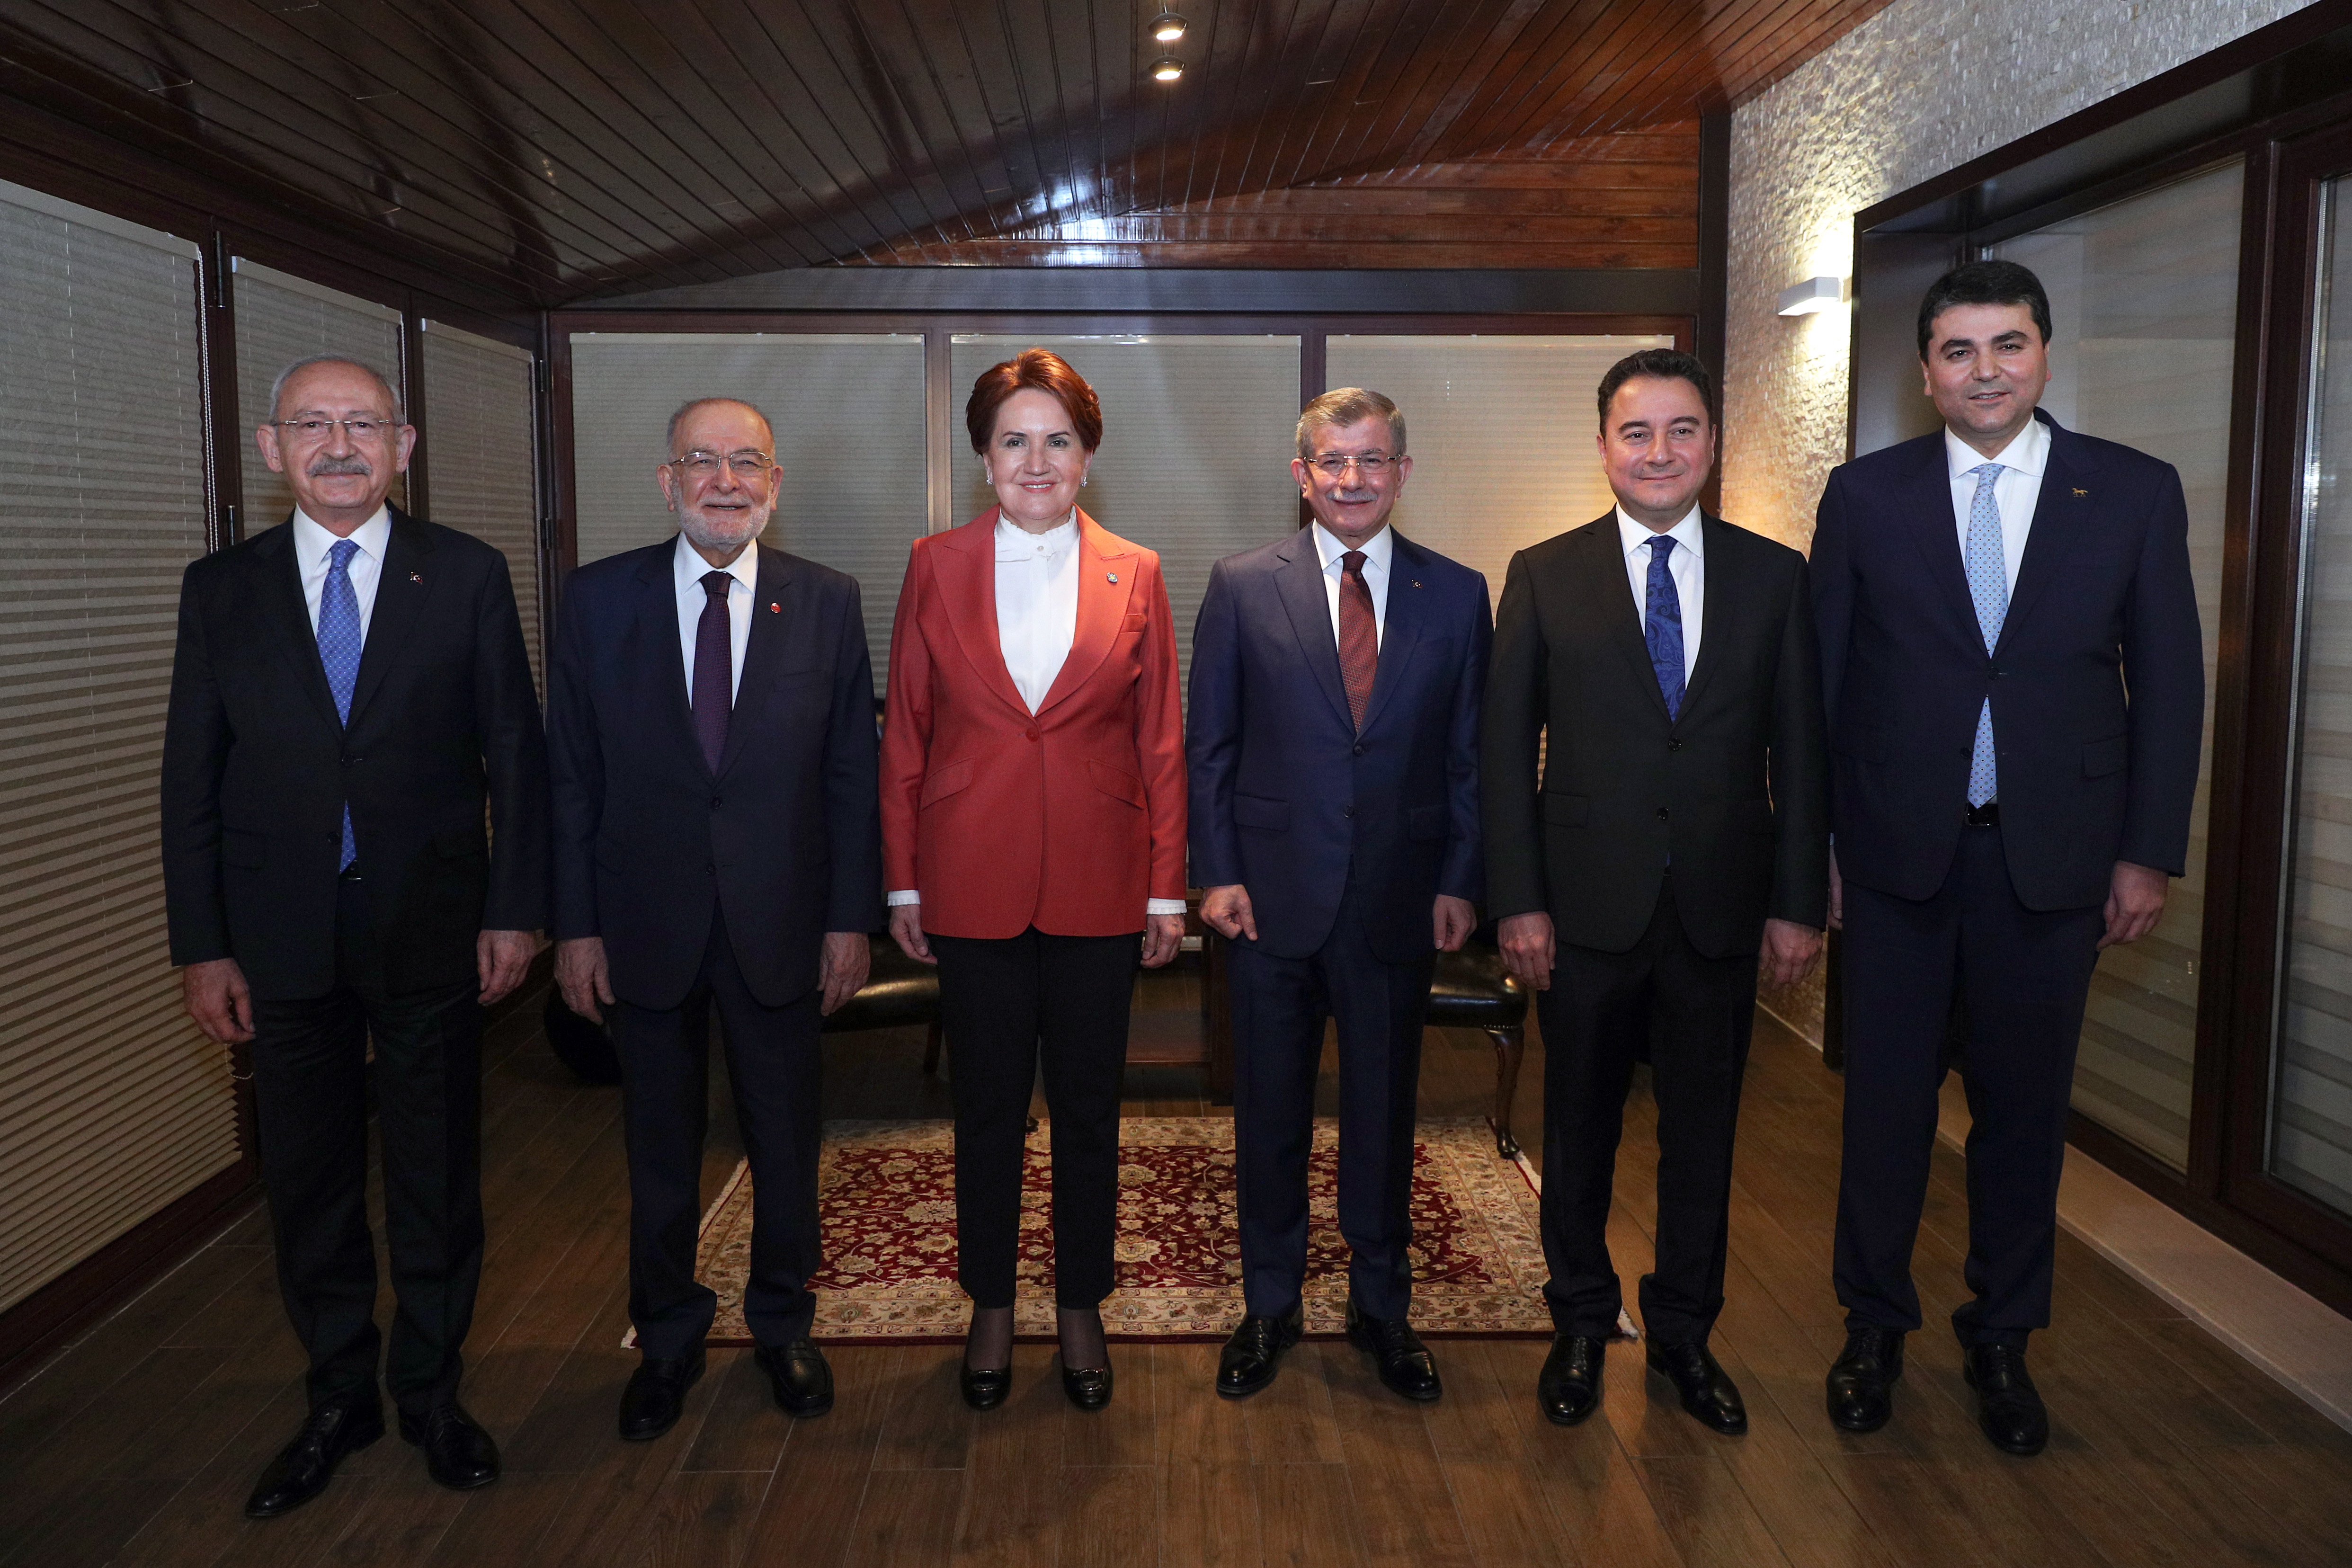 Οι επικεφαλής της τουρκικής αντιπολίτευσης. Από αριστερά: Κεμάλ Κιλιτσντάρογλου, Τεμέλ Καραμολάογλου, Μεράλ Ακσενέρ, Αχμέτ Νταβούτογλου, Αλί Μπαμπατσάν και Γκουλτεκίν Ουσάλ
